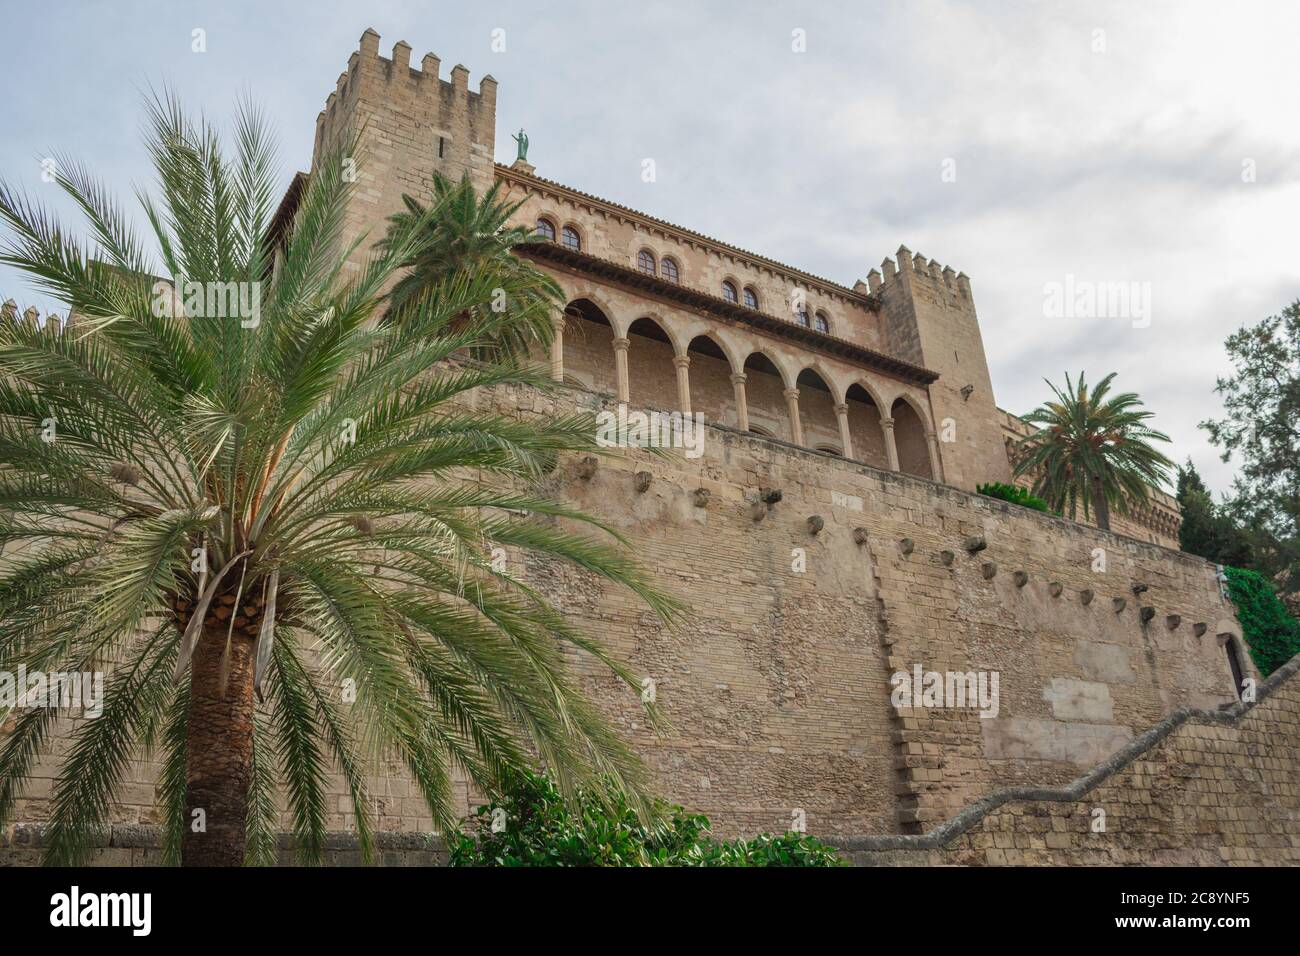 La Almudaina è il Castello reale o Alcázar (palazzo fortificato) della città di Palma sull'isola di Maiorca. Foto Stock